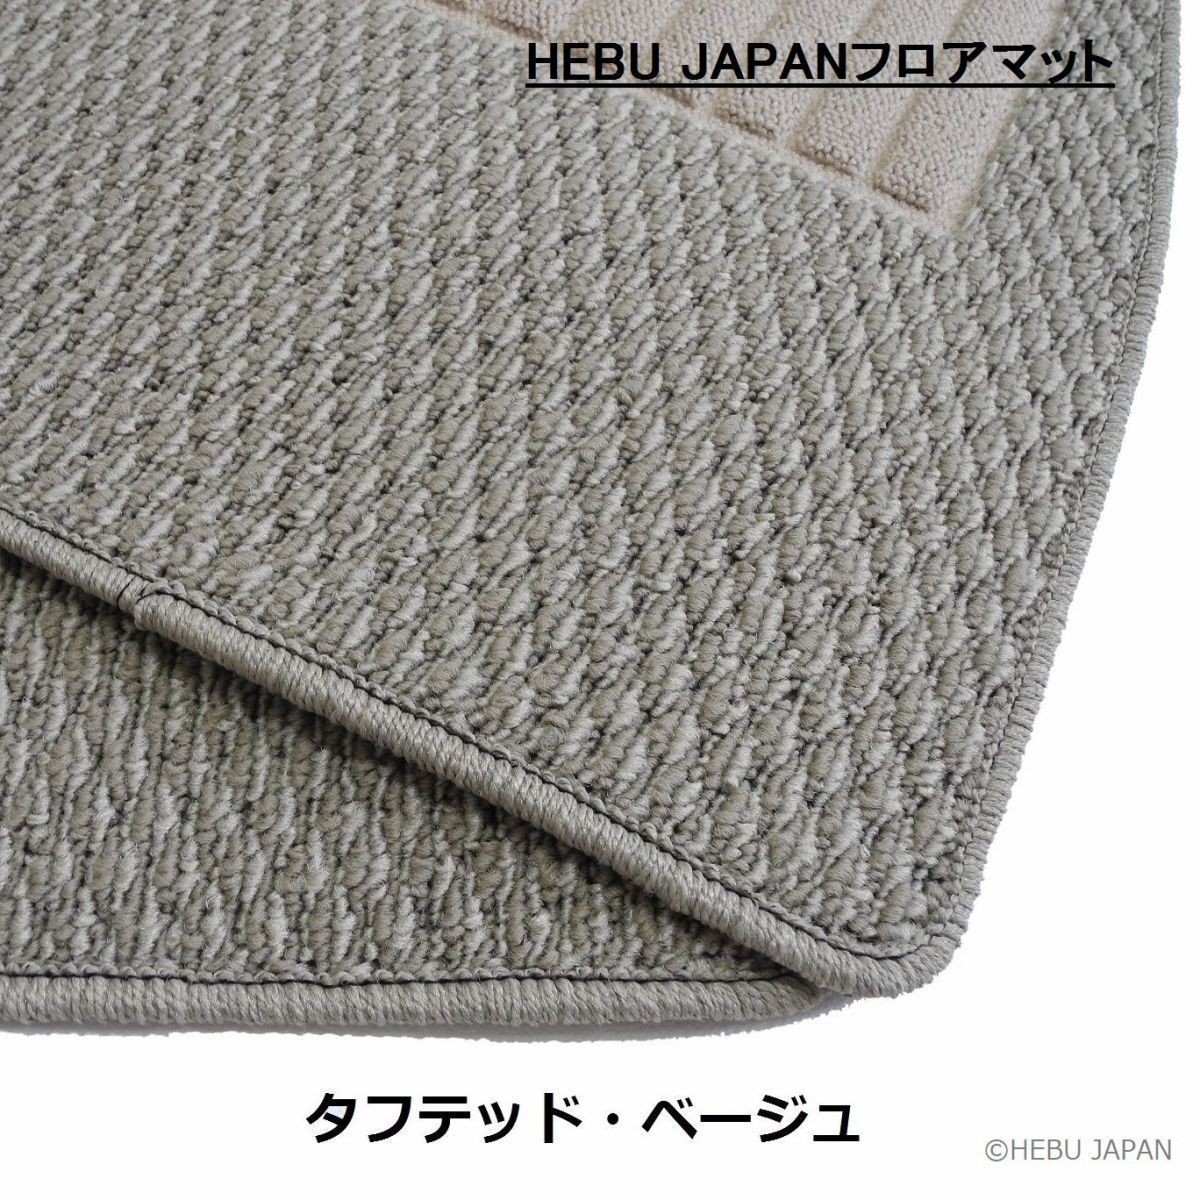  включая доставку HEBU JAPAN Lupo RHD коврик на пол бежевый 